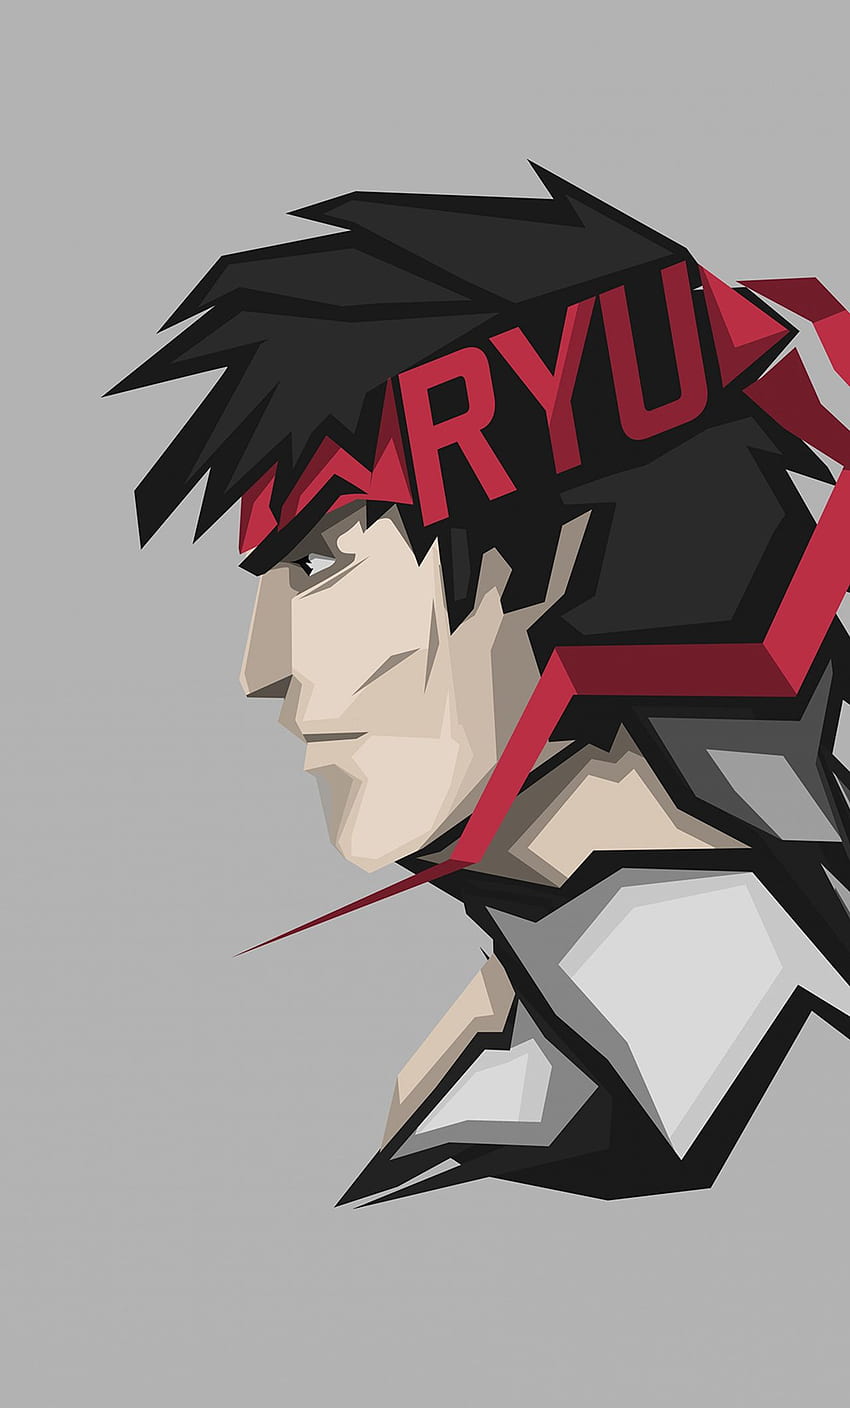 Ryu, Street Fighter, video game, seni minimal wallpaper ponsel HD